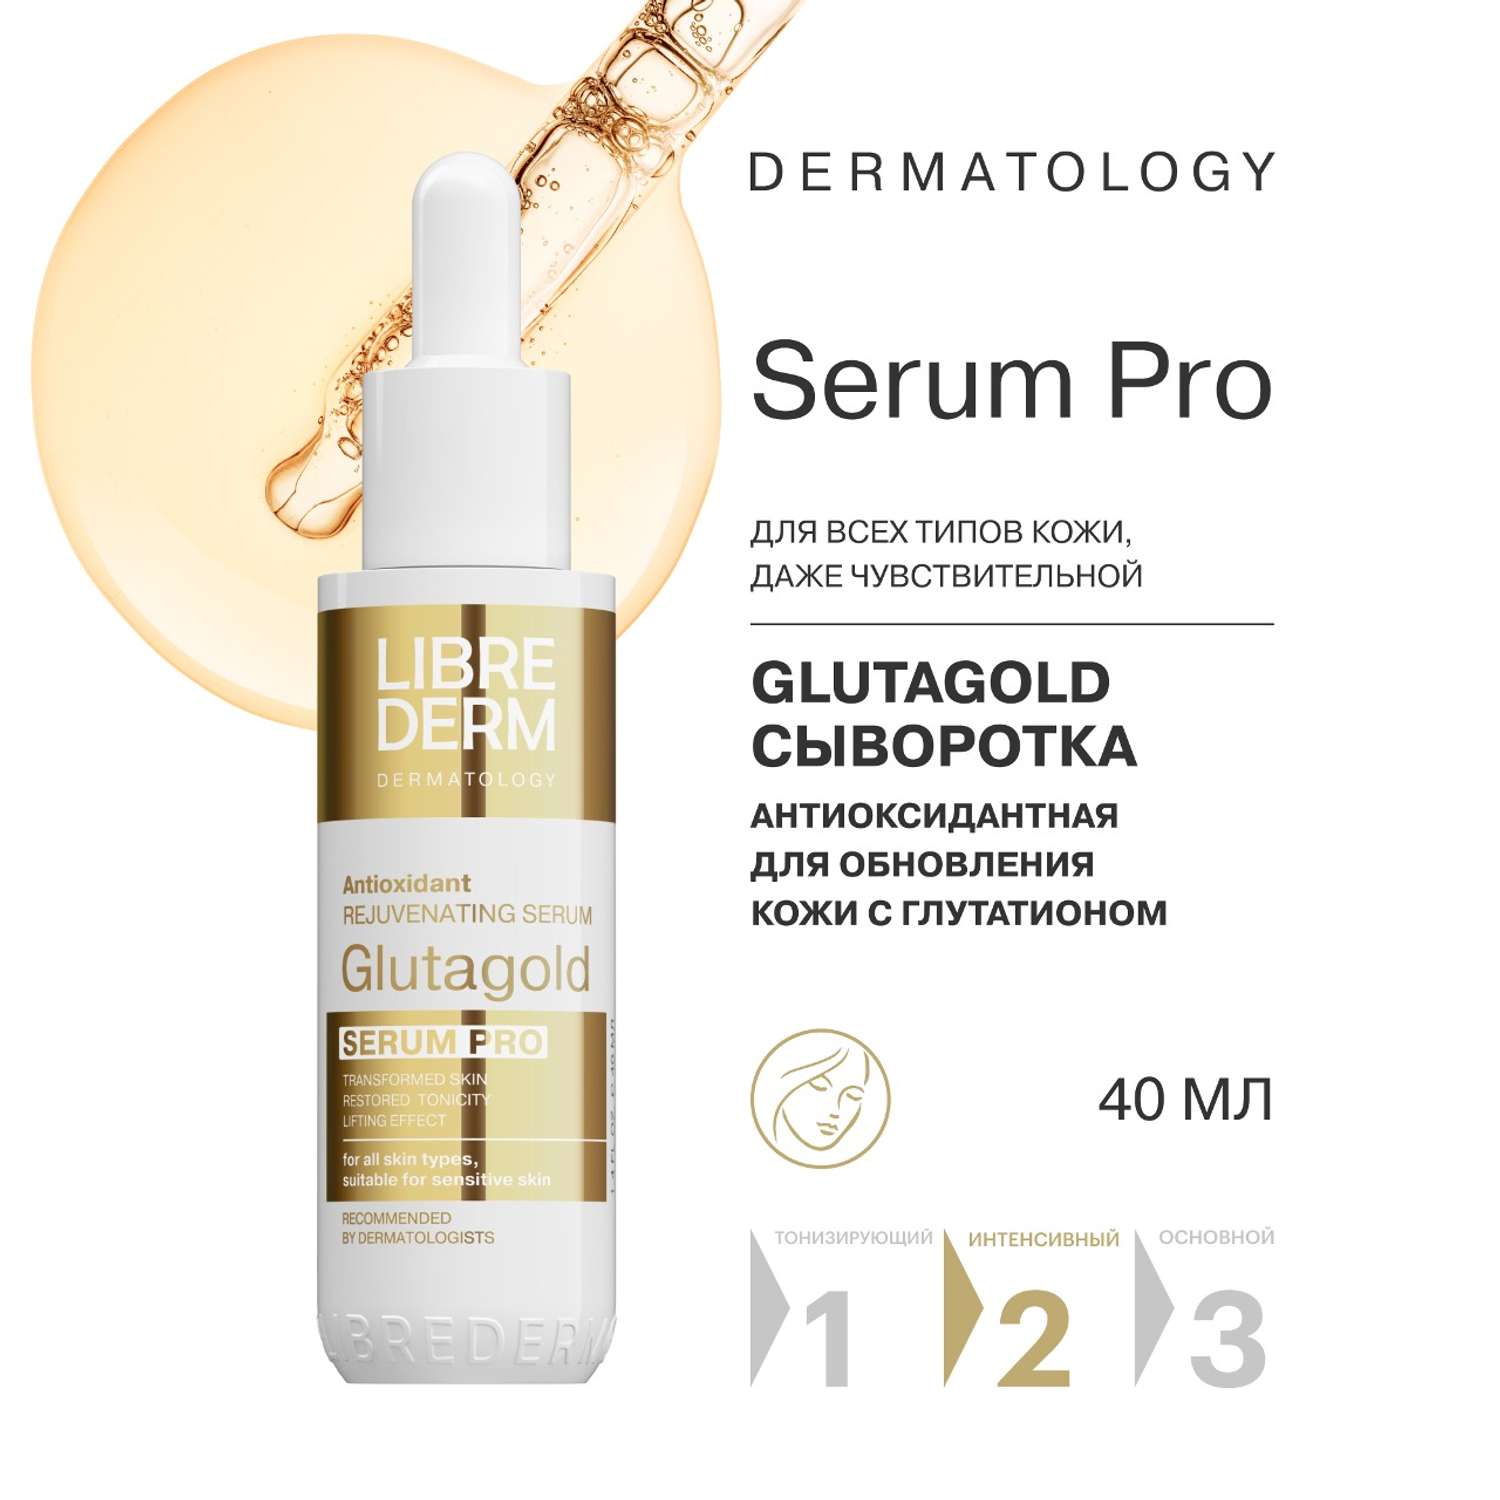 Сыворотка для лица Librederm serum pro антиоксидантная для обновления кожи Glutagold 40 мл - фото 2